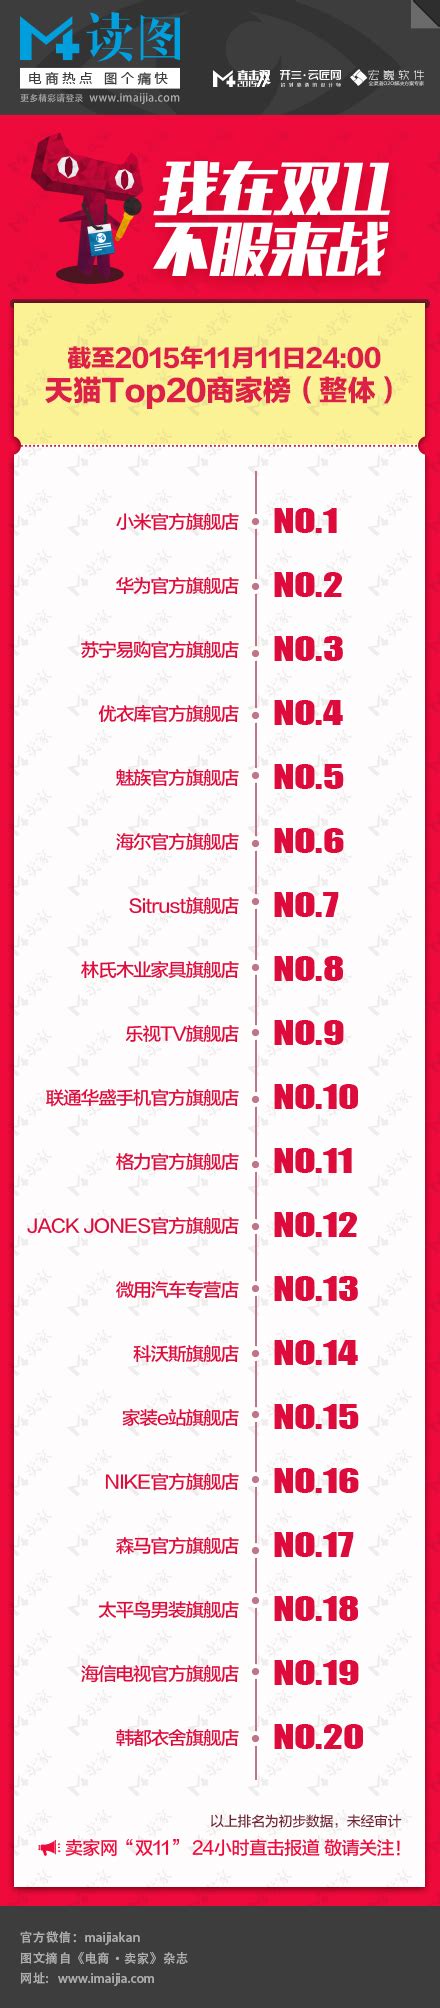 2018天猫双11品牌预售销量排行榜 前十个品牌排名榜单-闽南网